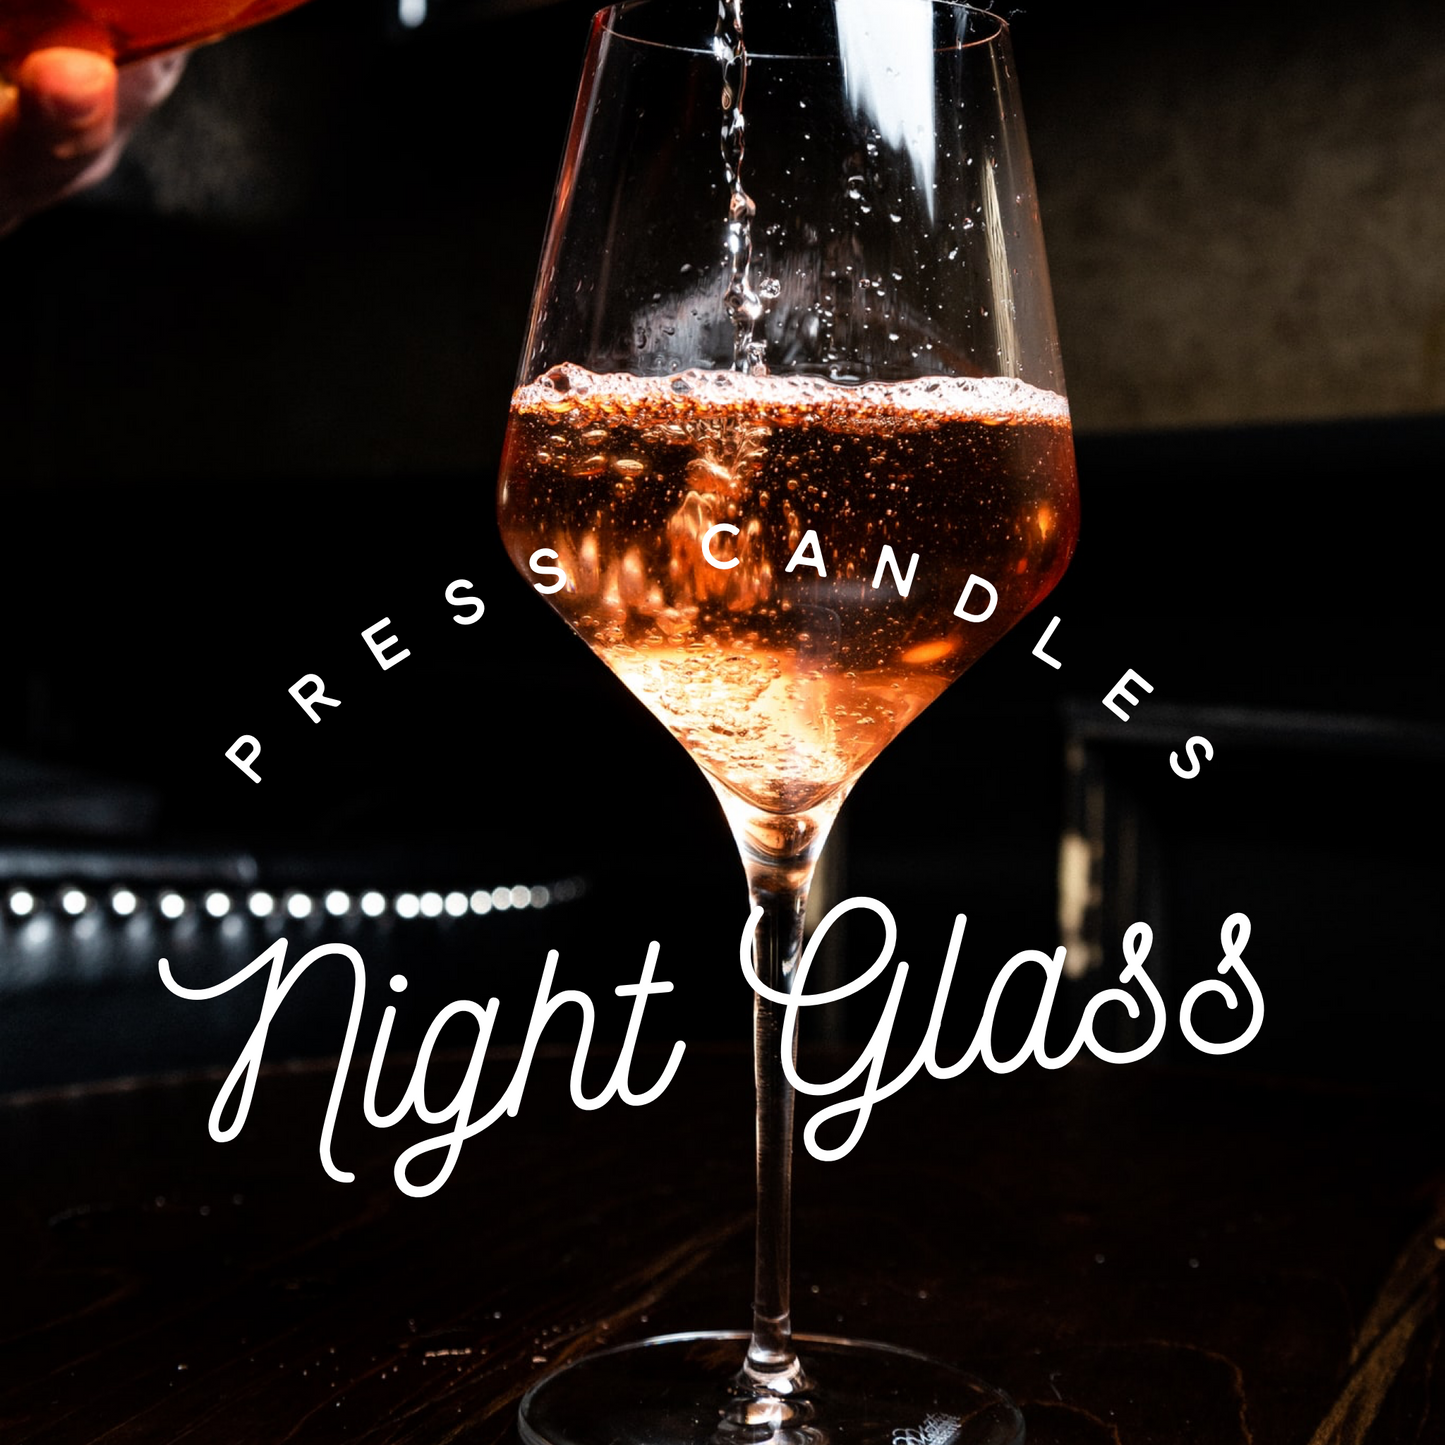 Night glass